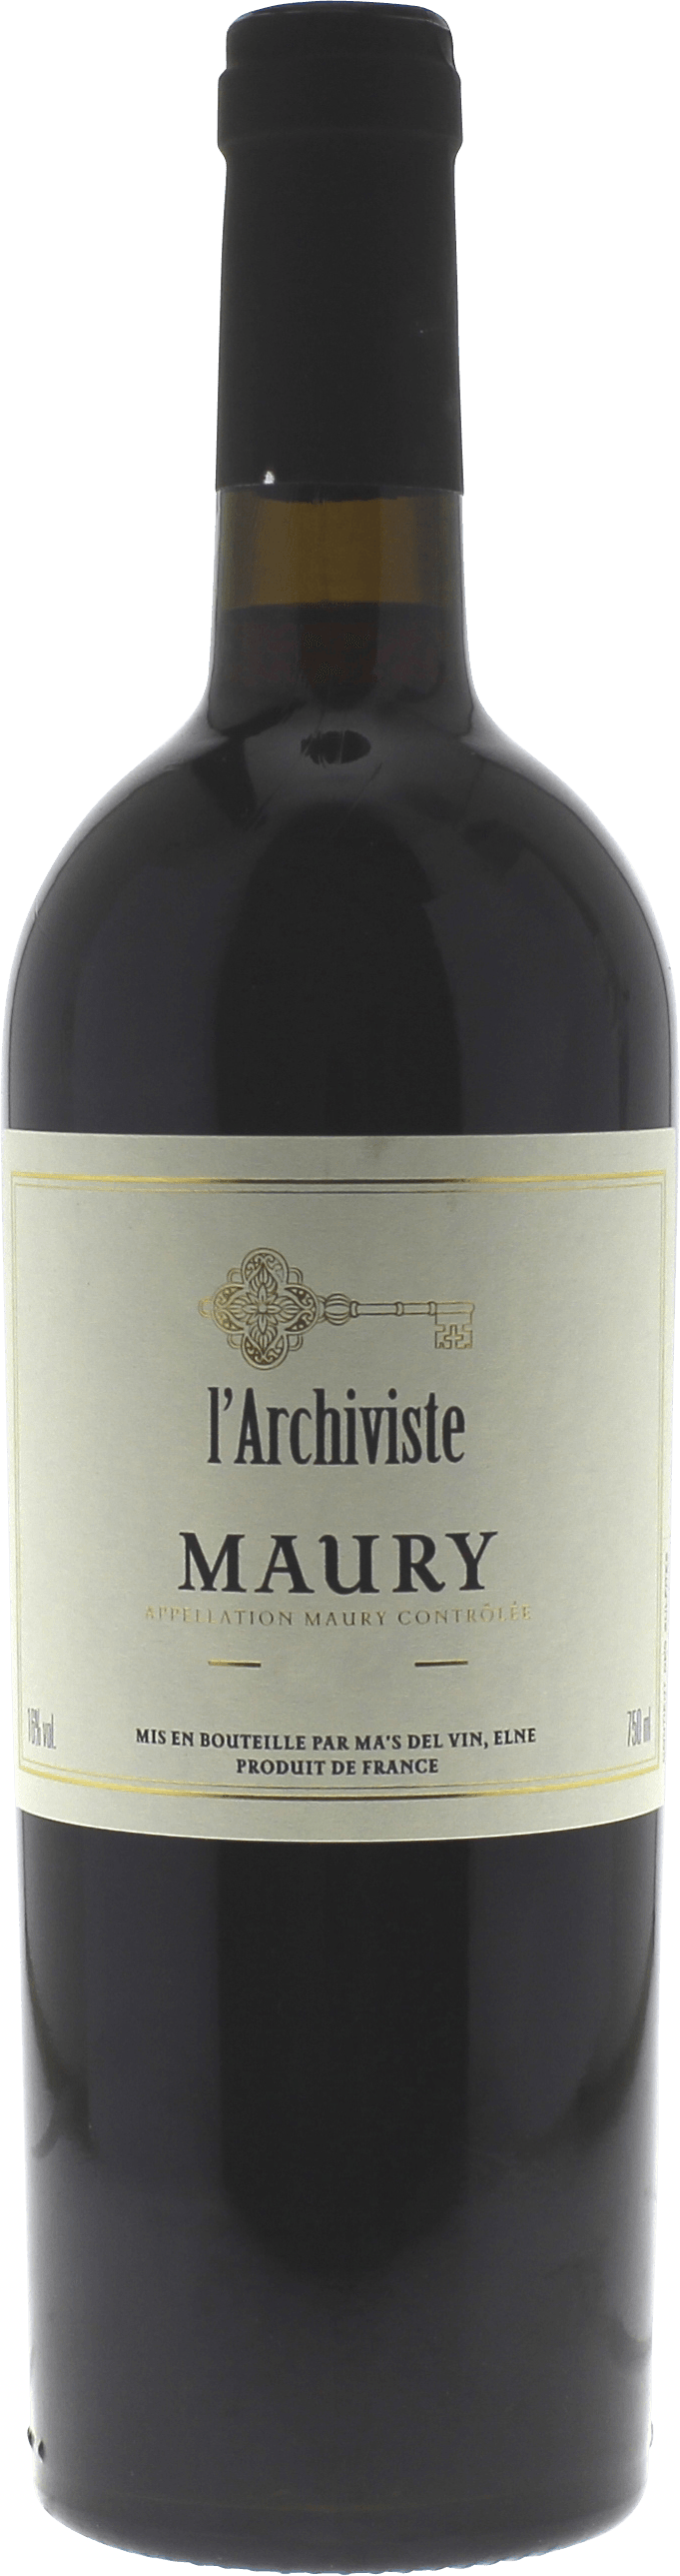 Maury l'archiviste 1990 Vin doux naturel Rivesaltes, Vin doux naturel